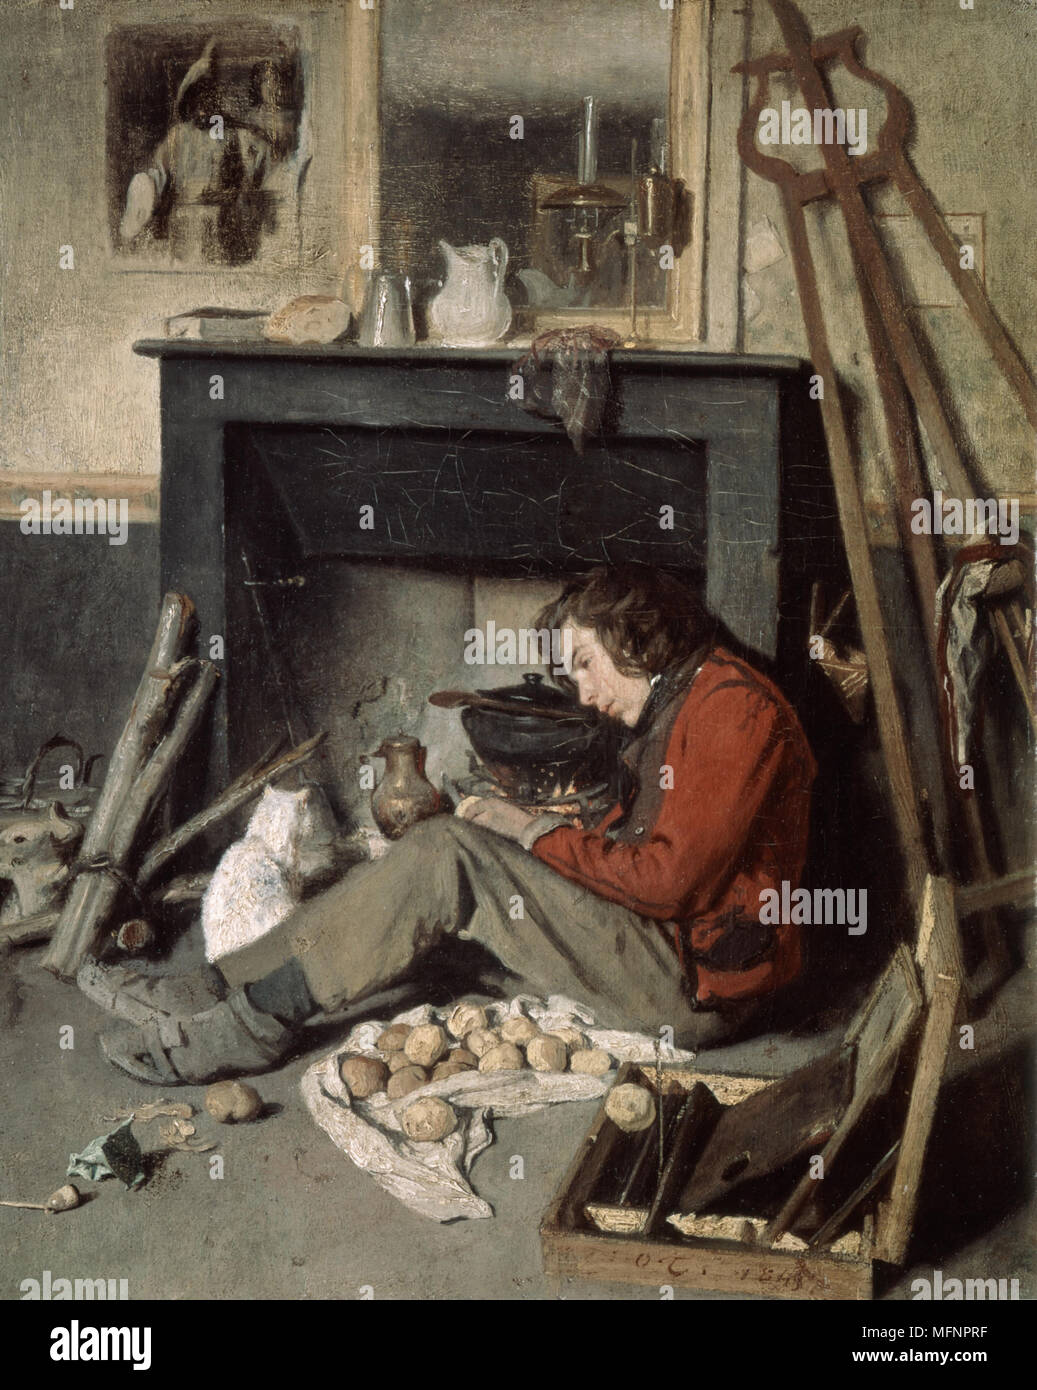 Le Studio de l'artiste' 1845. Huile sur toile. Octave Tassaert (1800-1874) peintre français genre et portrait. Artiste et son chat blanc, assis en face de l'incendie sur laquelle est une marmite. La lampe Argand sur cheminée. Boîte de peinture chevalet Banque D'Images